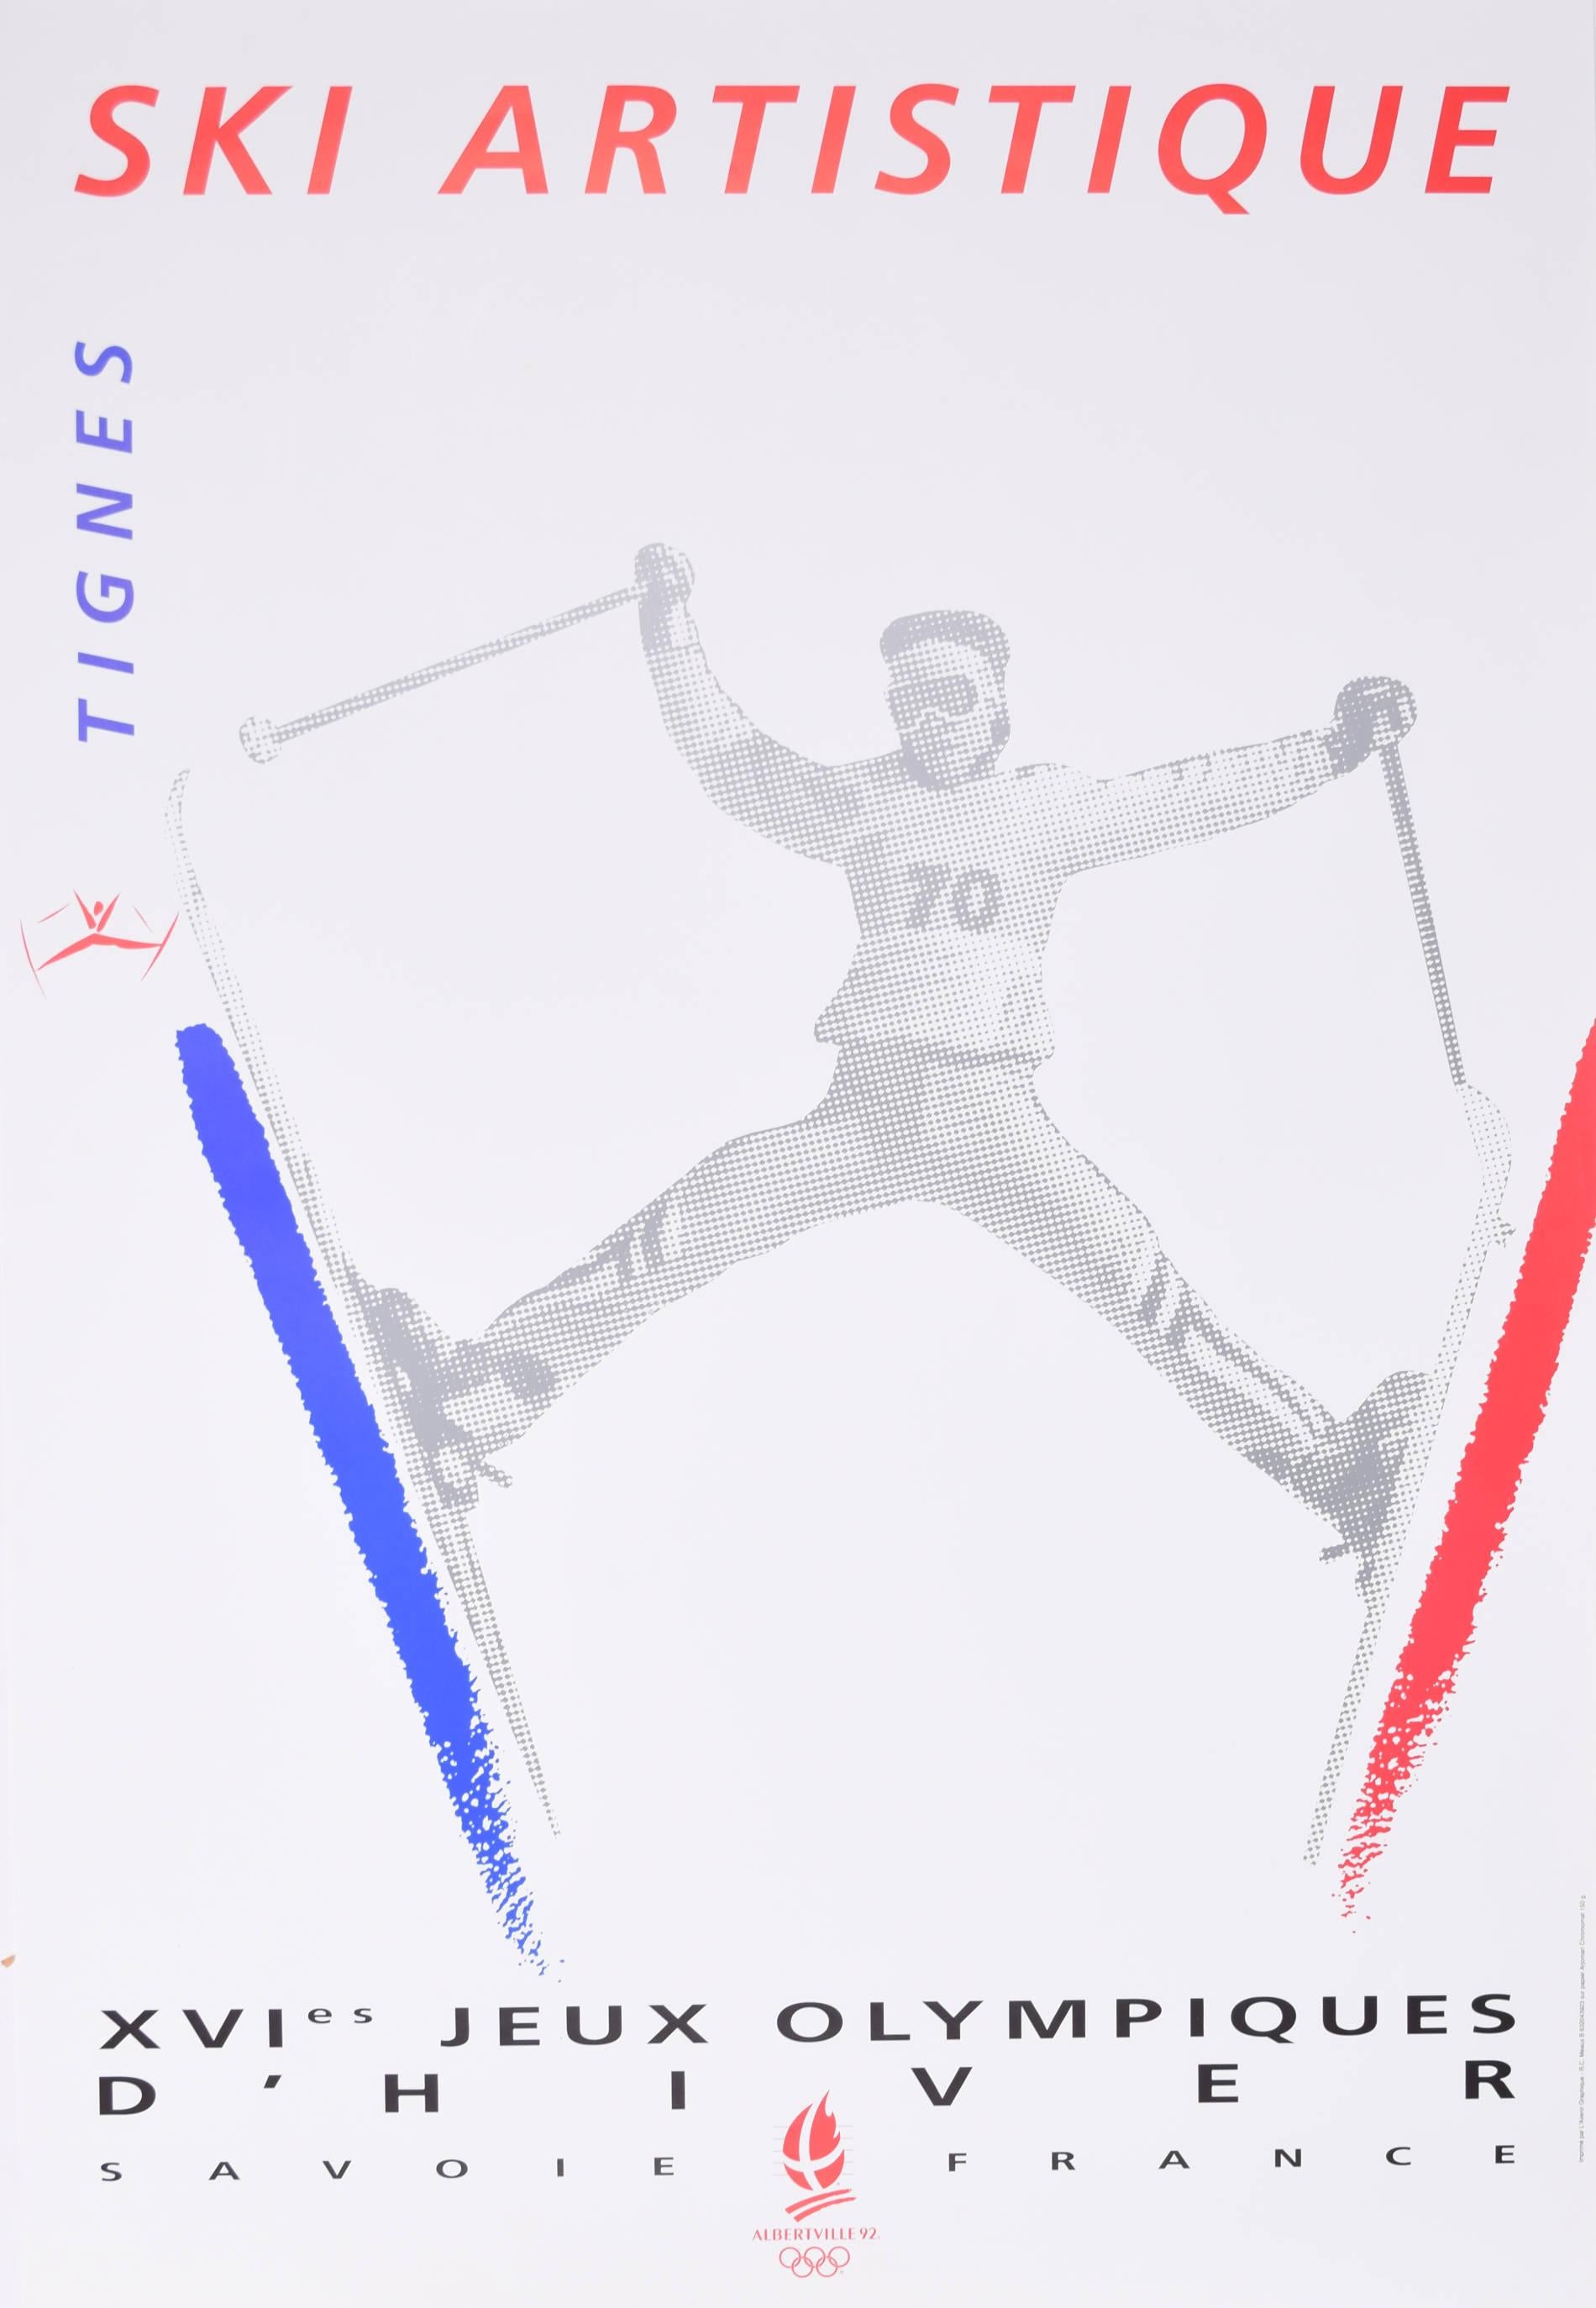 Tignes, 1992, Ski Artistique original 1990, affiche vintage de Meaux - Print de R C Meaux